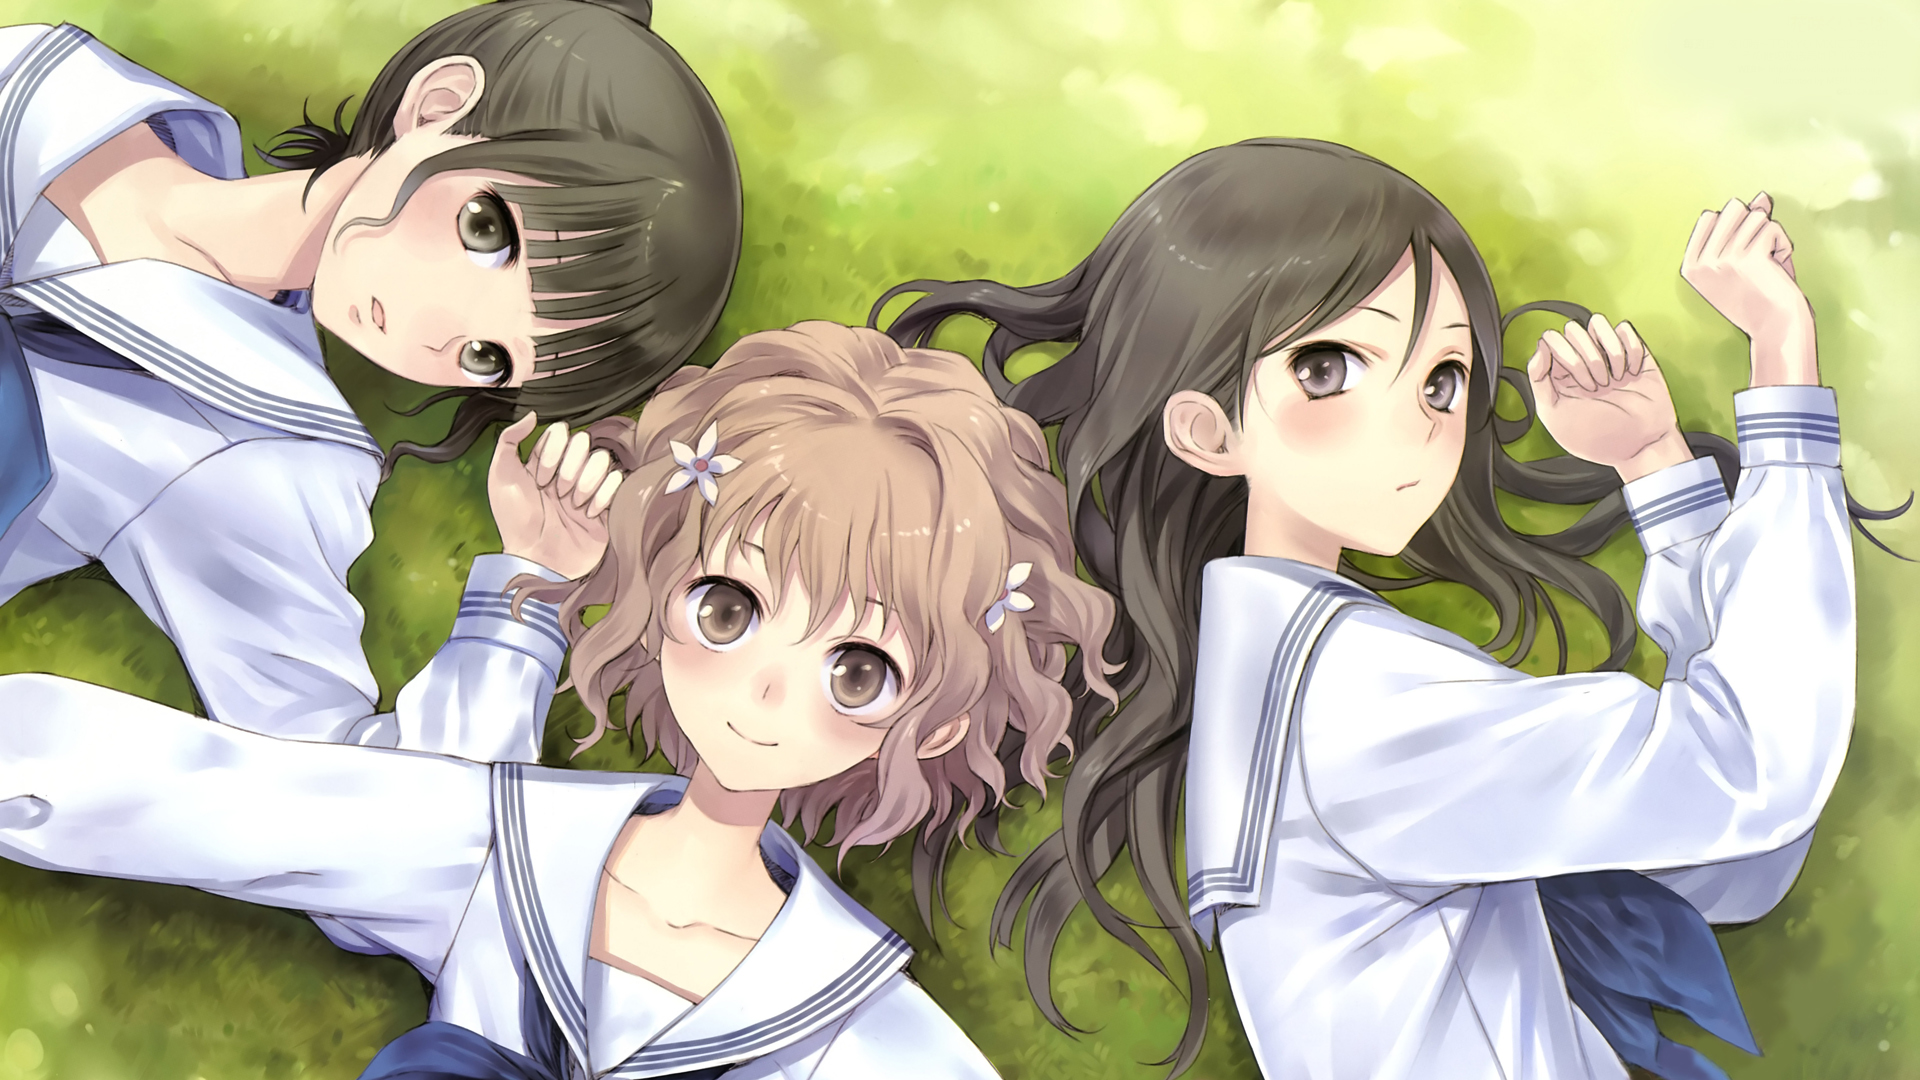 school uniforms, Hanasaku Iroha, Matsumae Ohana, Tsurugi Minko, Oshimizu Nako, anime girls, sailor uniforms - desktop wallpaper